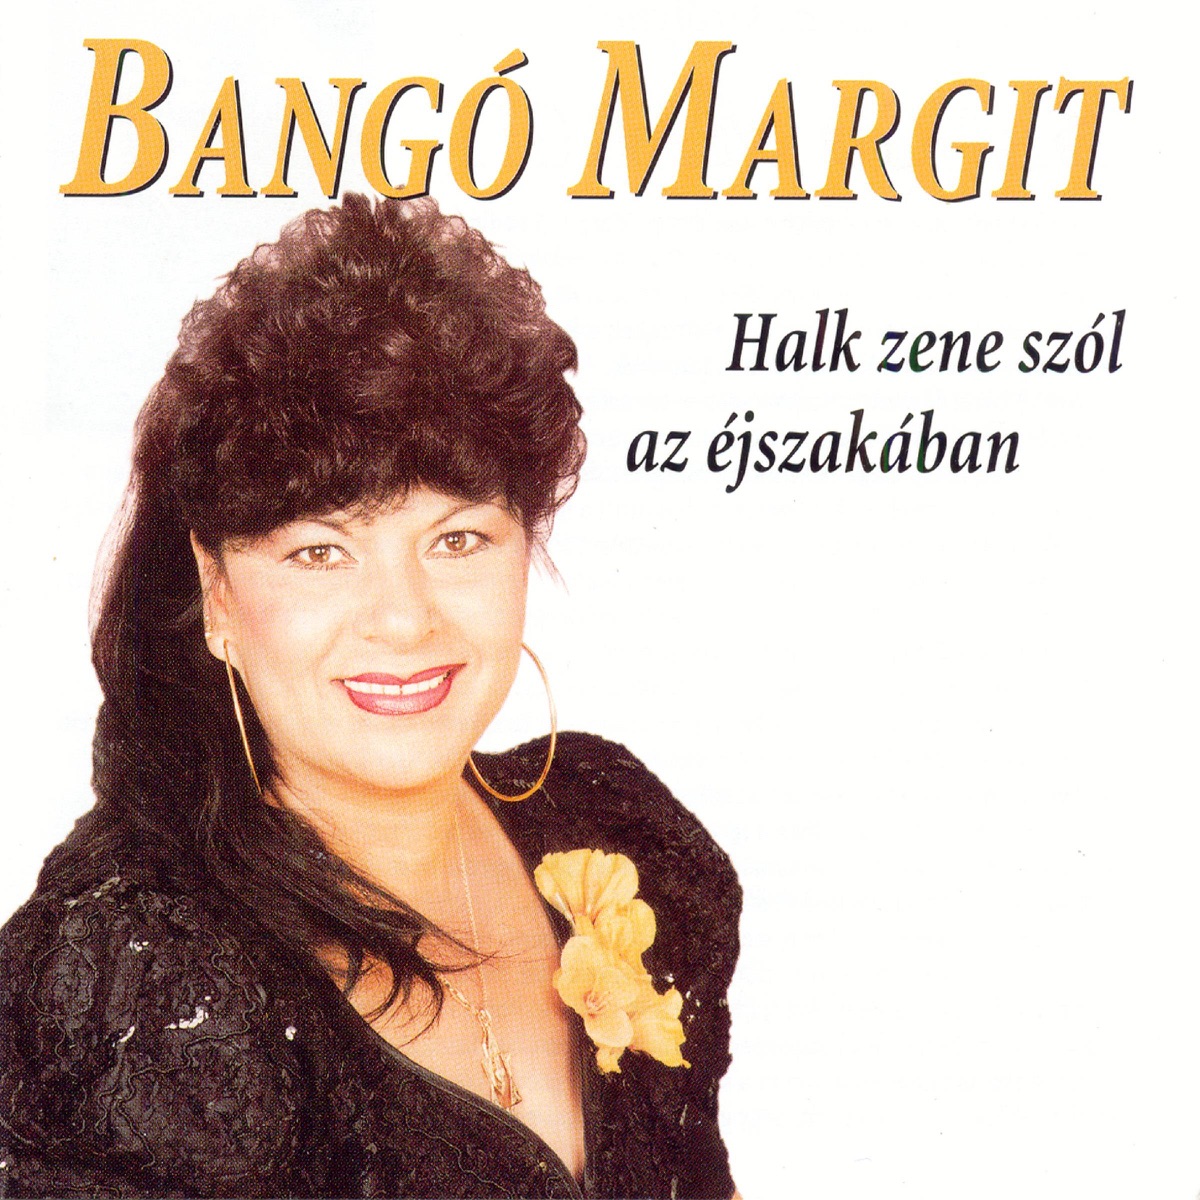 Halk zene szól az éjszakában - Album by Bango Margit - Apple Music